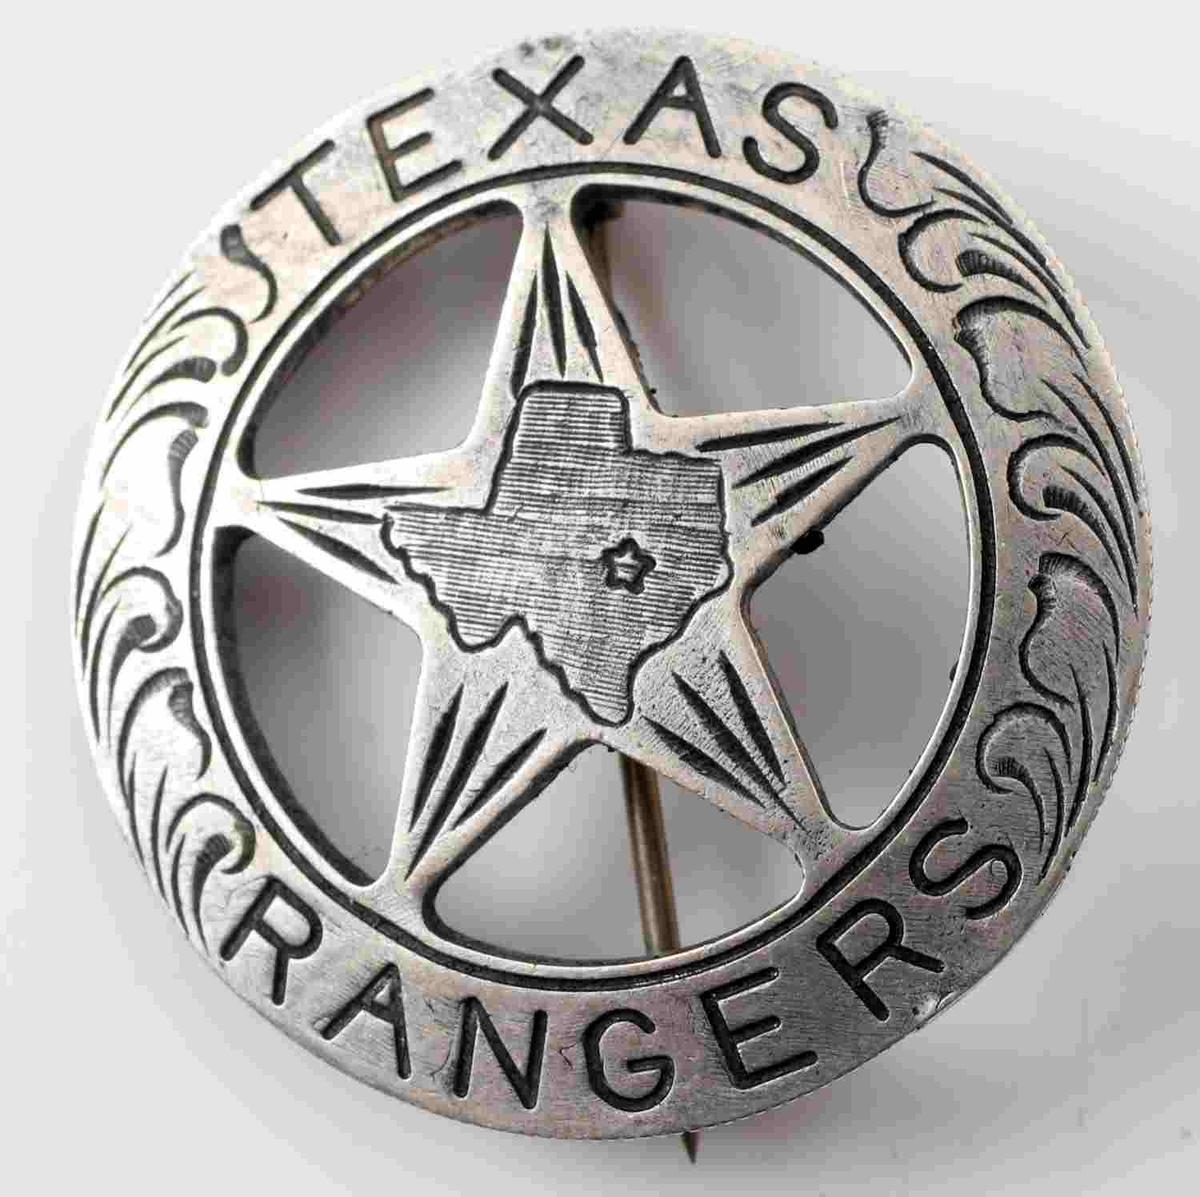 TEXAS RANGER BADGE STRUCK FROM MEXICAN 5 PESO COIN